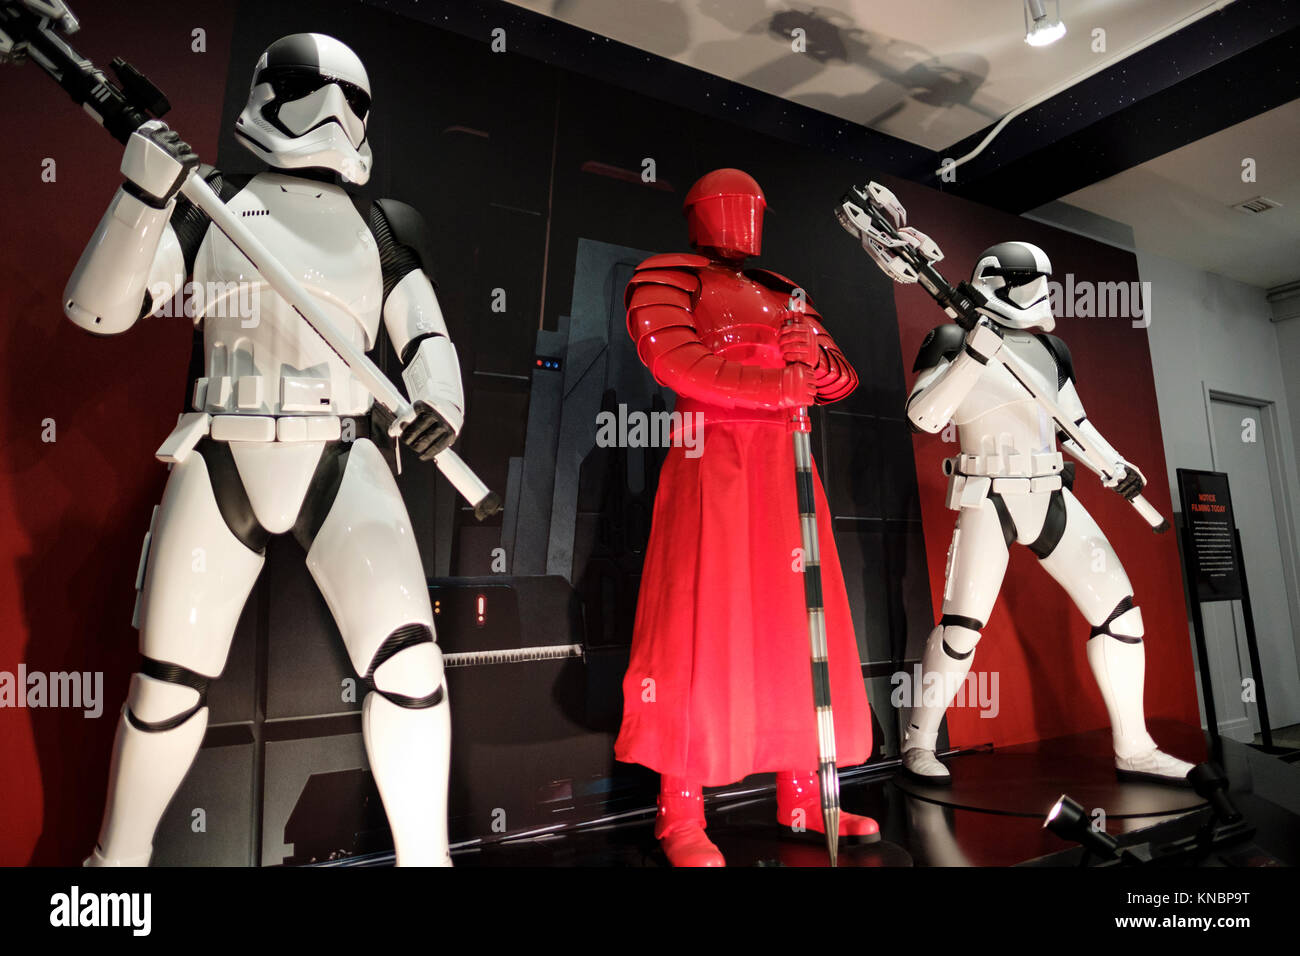 Répliques grandeur nature d'une garde prétorienne et bourreau Première commande stormtroopers, Star Wars Jedi Dernière le pop up store, événement promotionnel, Toronto. Banque D'Images